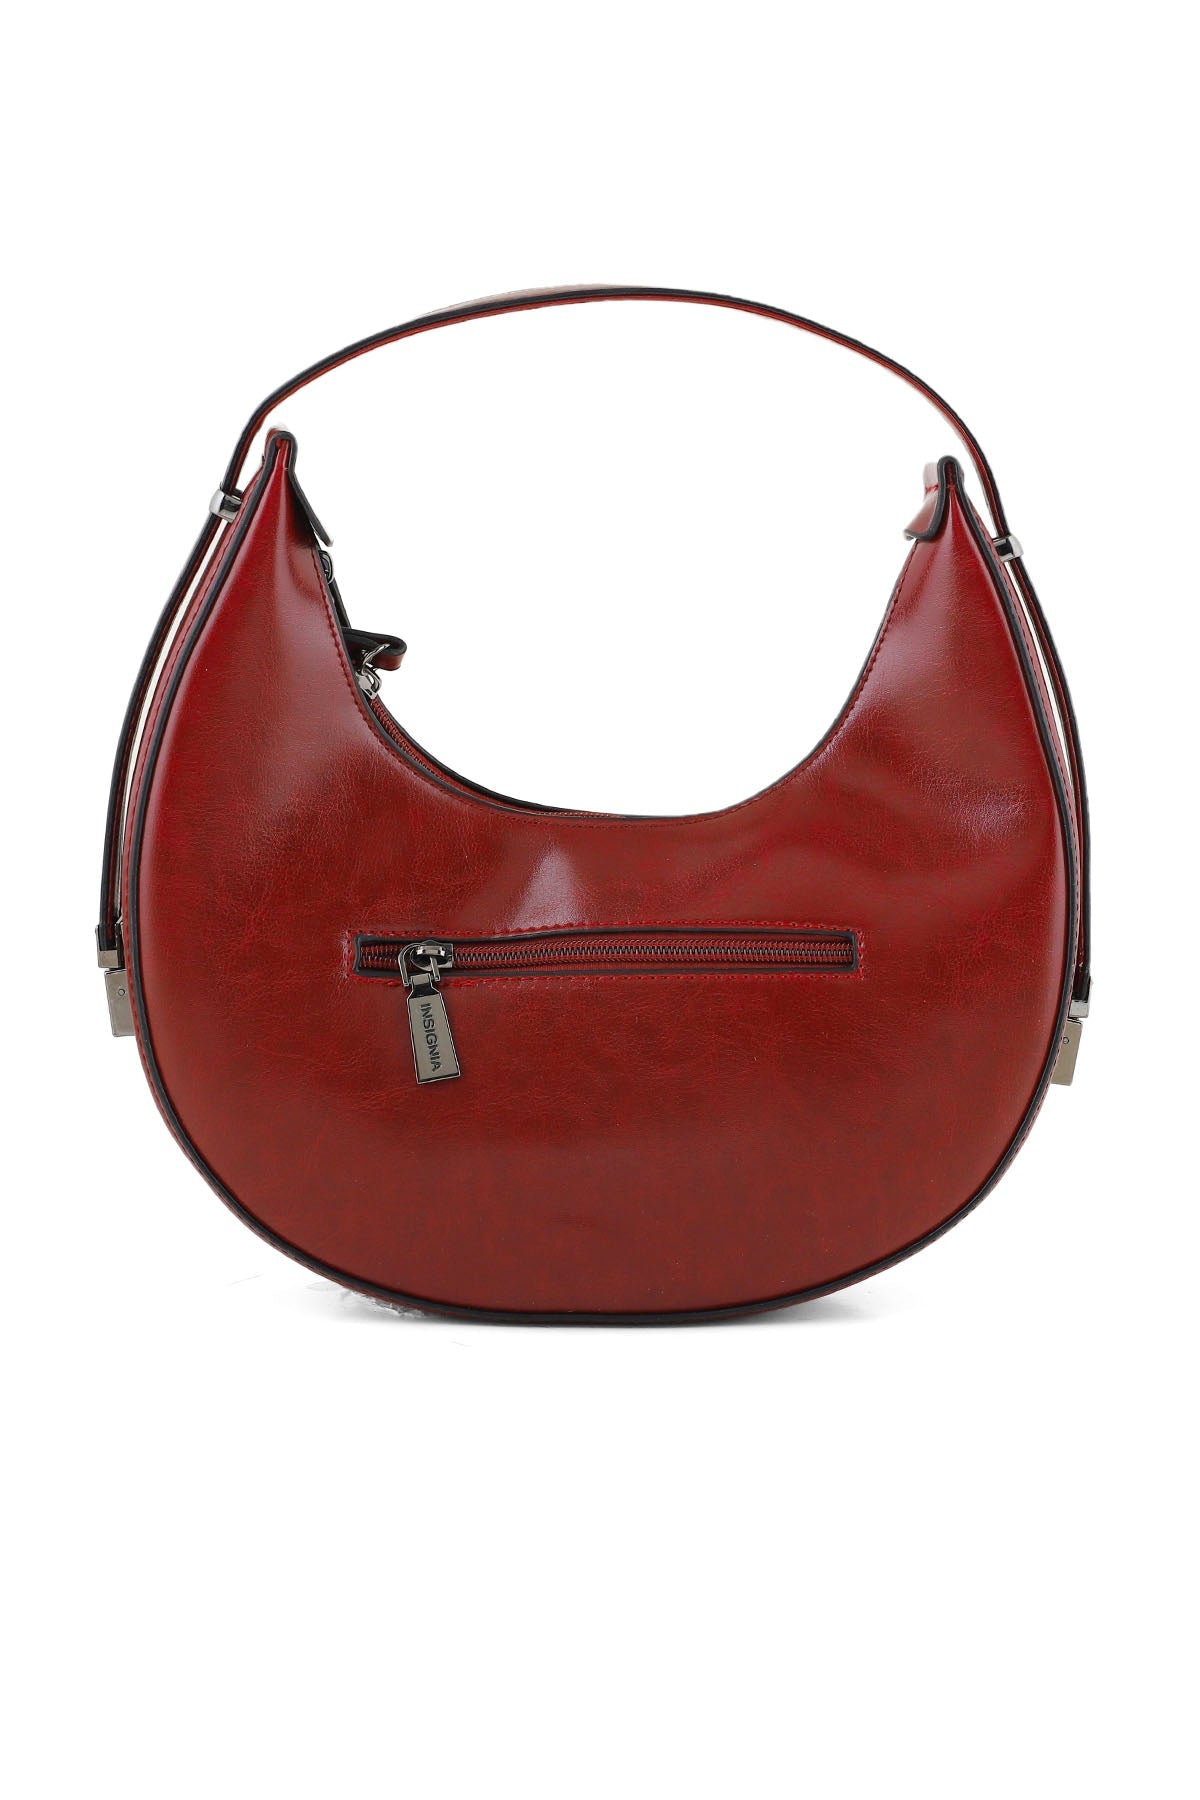 Hobo Hand Bags B14981-Red